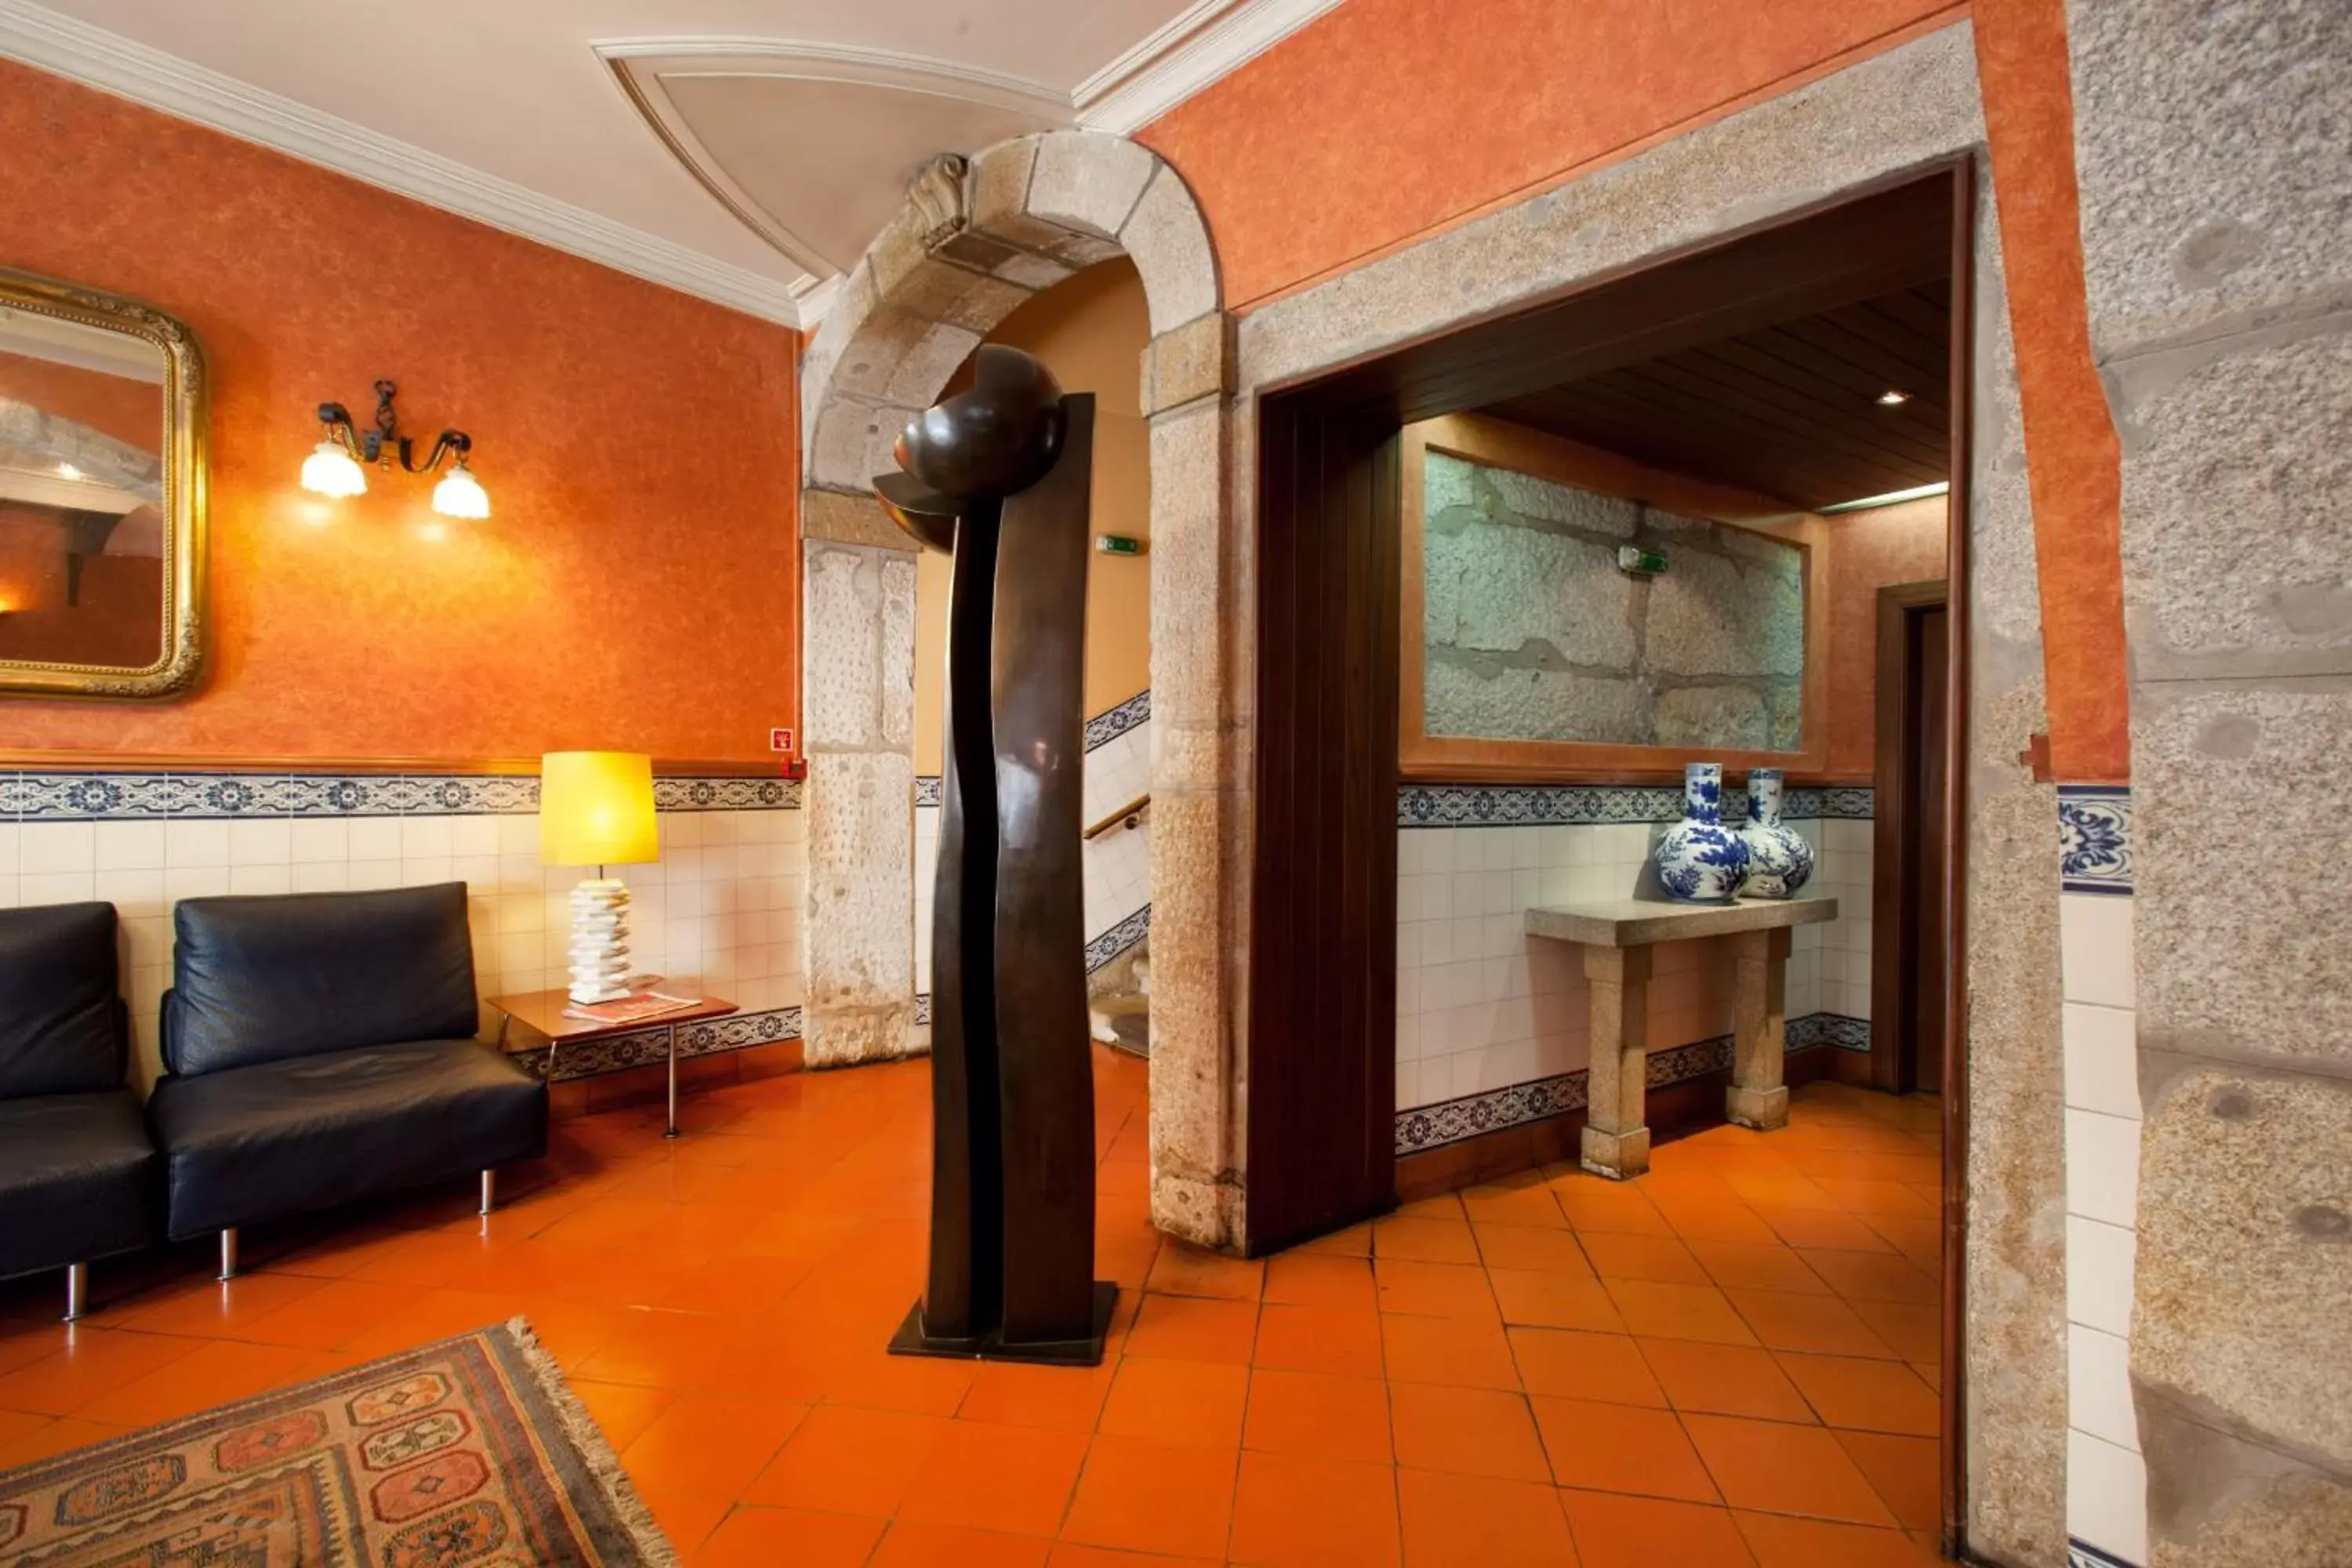 Lobby or reception, Bathroom in Hotel Internacional Porto